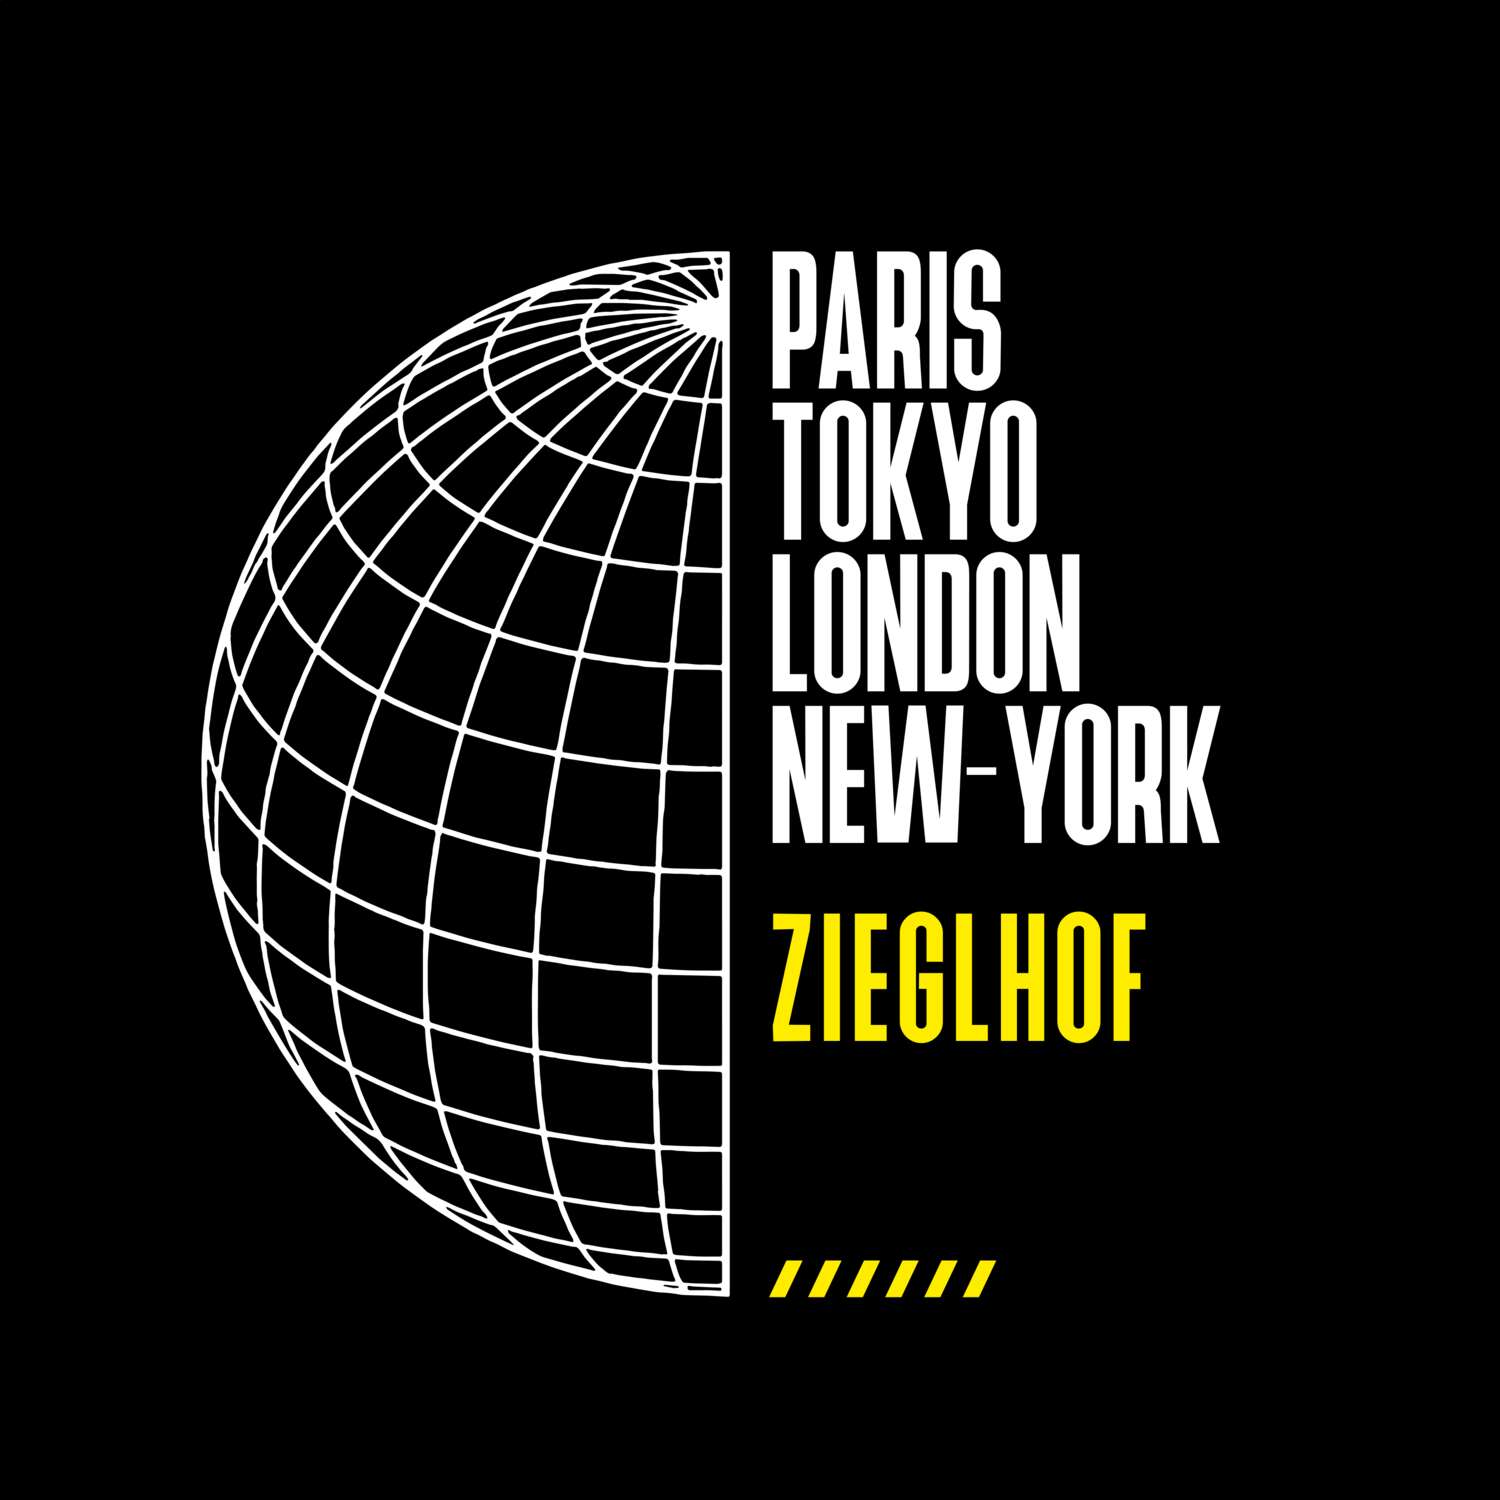 Zieglhof T-Shirt »Paris Tokyo London«